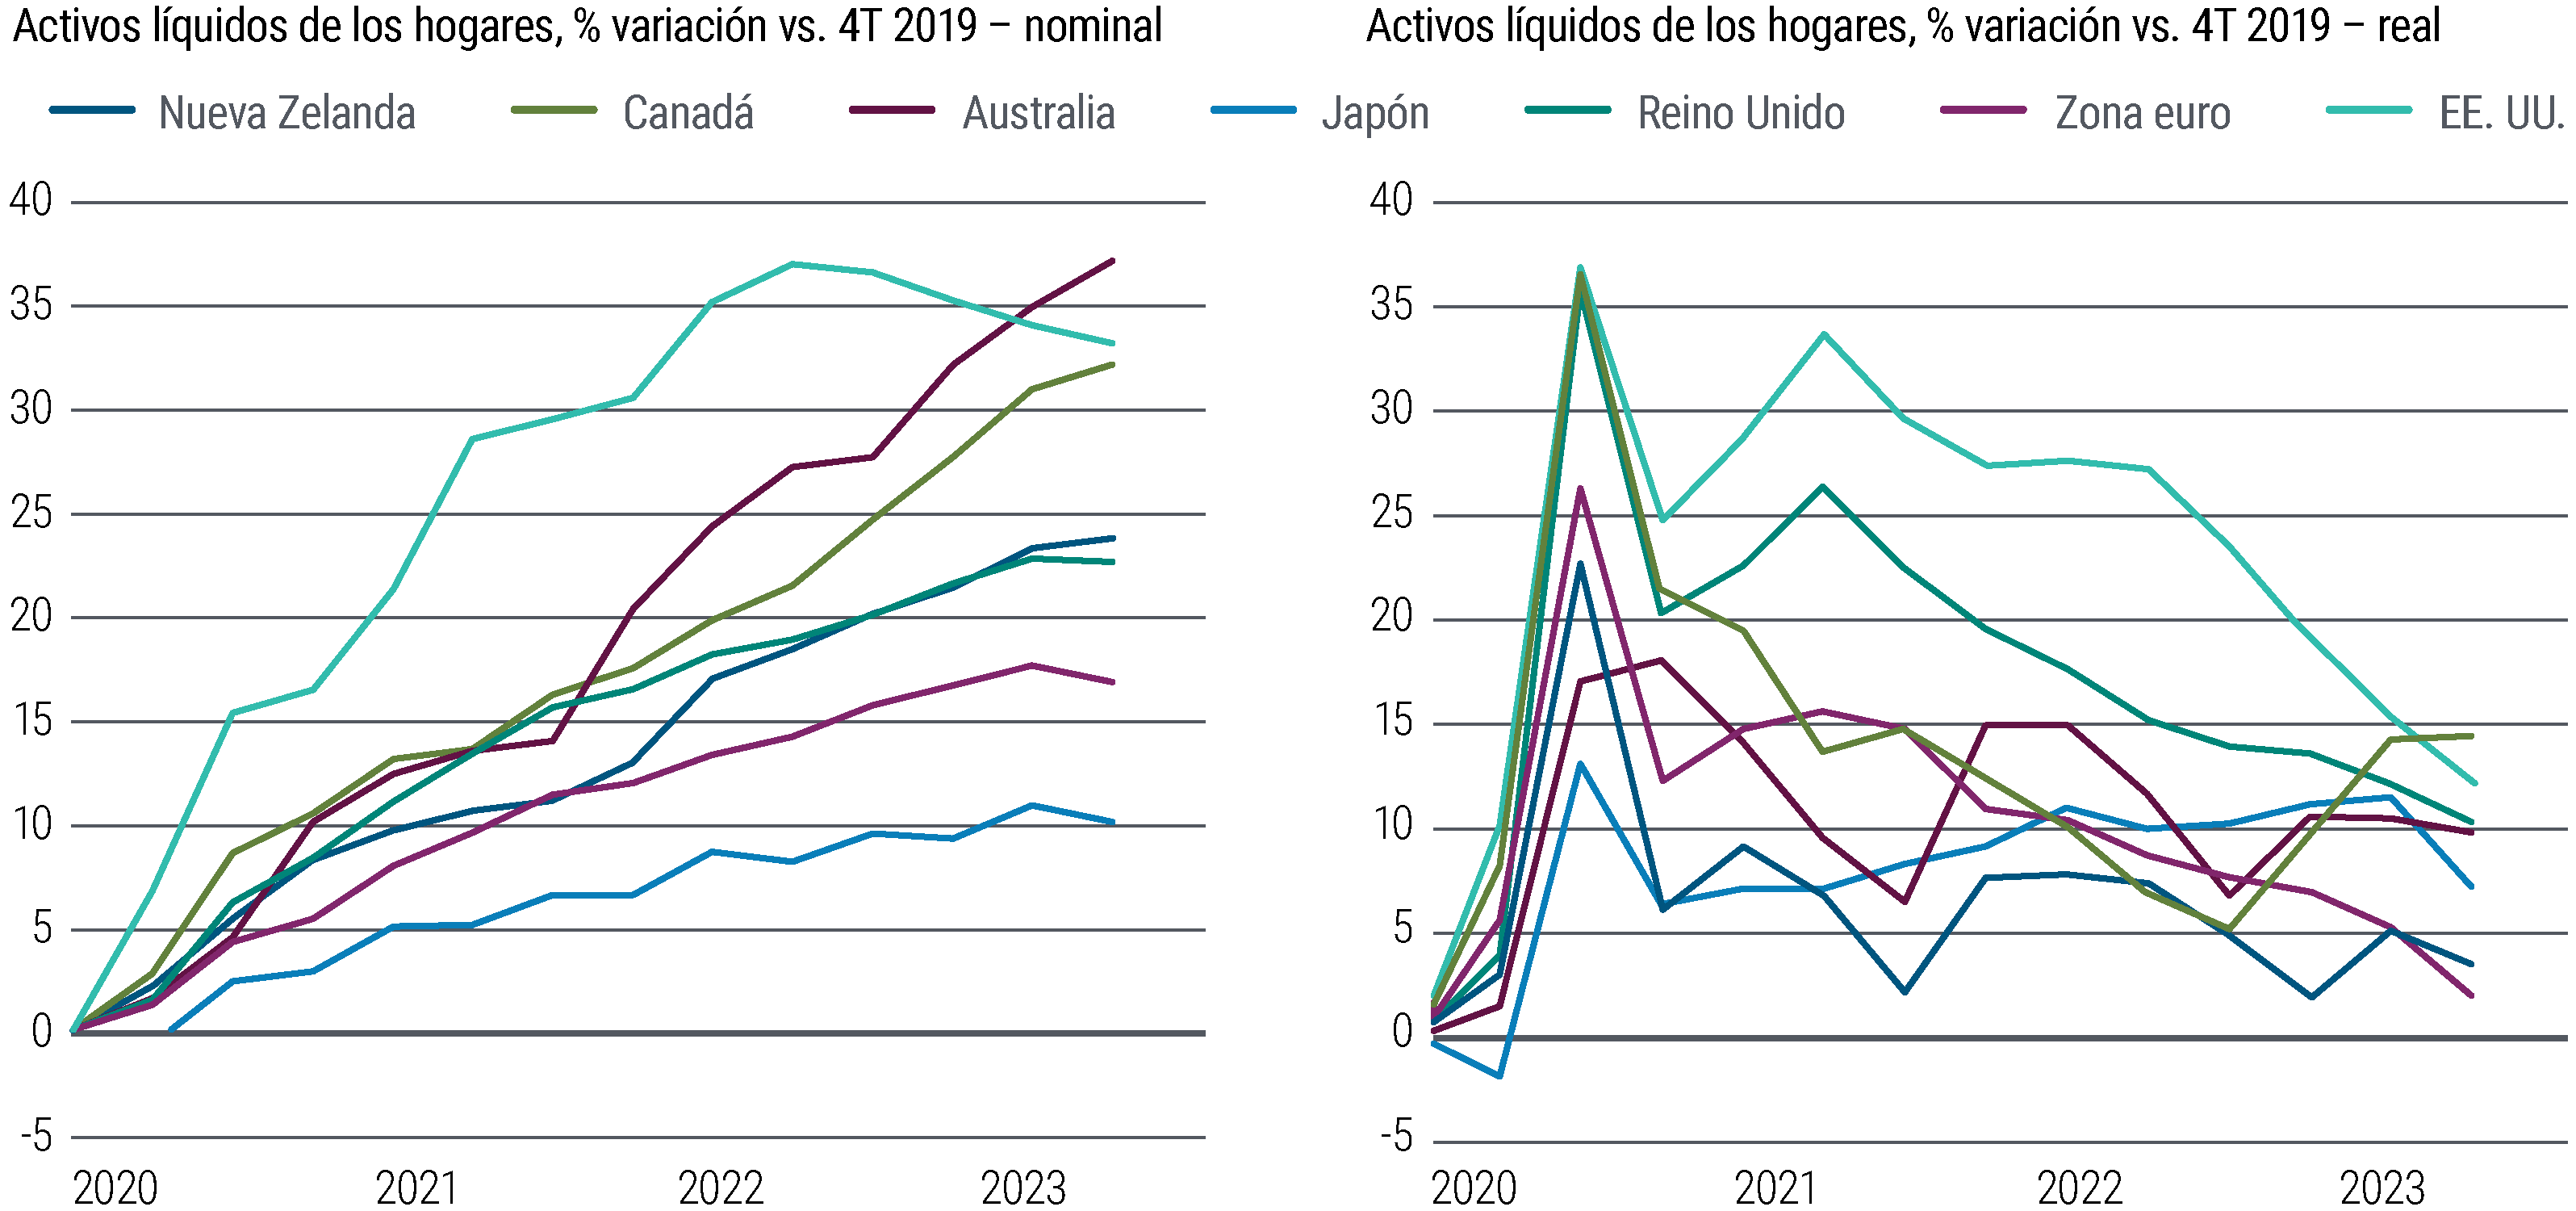 El gráfico 1 compara dos gráficos de líneas. El gráfico de la izquierda muestra la variación porcentual que han experimentado los activos líquidos de los hogares, en términos nominales, con respecto al cuarto trimestre de 2019 en varias economías de mercados desarrollados –Nueva Zelanda, Canadá, Australia, Japón, Reino Unido, la eurozona y Estados Unidos– desde 2020 hasta marzo de 2023. El gráfico de la derecha muestra la variación porcentual que han experimentado los activos líquidos de los hogares, en términos reales, en esos mismos países y durante el mismo periodo. En términos nominales, los activos líquidos –que incluyen divisas, depósitos y fondos del mercado monetario– aumentaron de forma constante en Estados Unidos y crecieron un 37% entre el cuarto trimestre de 2019 y marzo de 2022, para después disminuir. Estos activos han aumentado de forma constante en Australia y, en marzo de 2023, acumulaban un crecimiento del 37% con respecto al cuarto trimestre de 2019. Los activos nominales aumentaron de forma menos acusada en Reino Unido, la eurozona y Japón y parece que ya han tocado techo en esas regiones. En términos reales, el crecimiento de los activos líquidos de los hogares alcanzó un máximo a mediados de 2020 y desde entonces se ha ralentizado de forma constante en todos los países con respecto al cuarto trimestre de 2019. Sin embargo, la variación de los activos líquidos de los hogares en términos reales se ha mantenido por encima de cero en todas las regiones. Los datos proceden de PIMCO, la OCDE, los institutos nacionales de estadística y los bancos centrales, a 11 de septiembre de 2023.